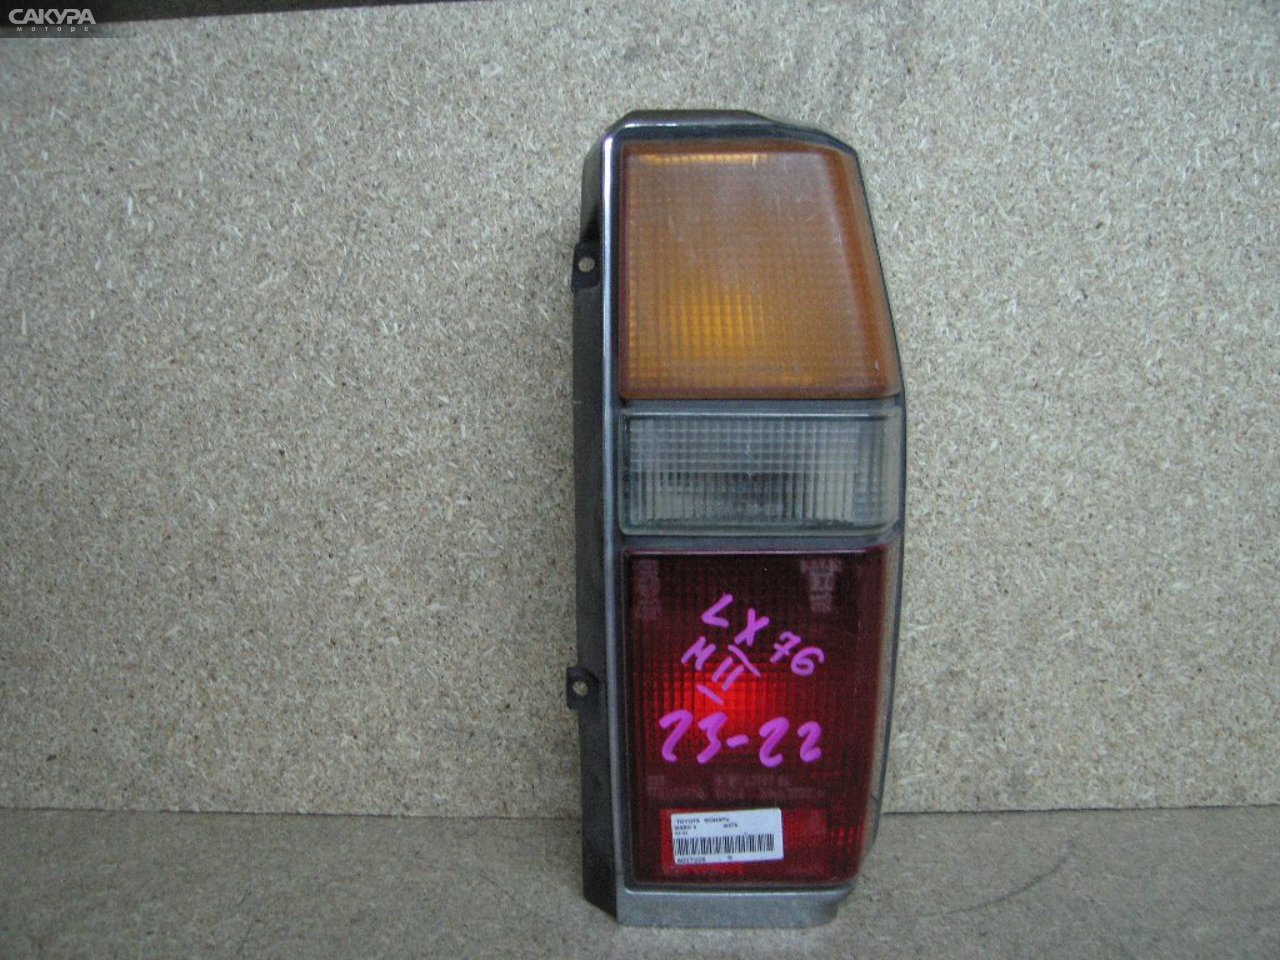 Фонарь стоп-сигнала правый Toyota Mark II GX70G 23-22: купить в Сакура Абакан.